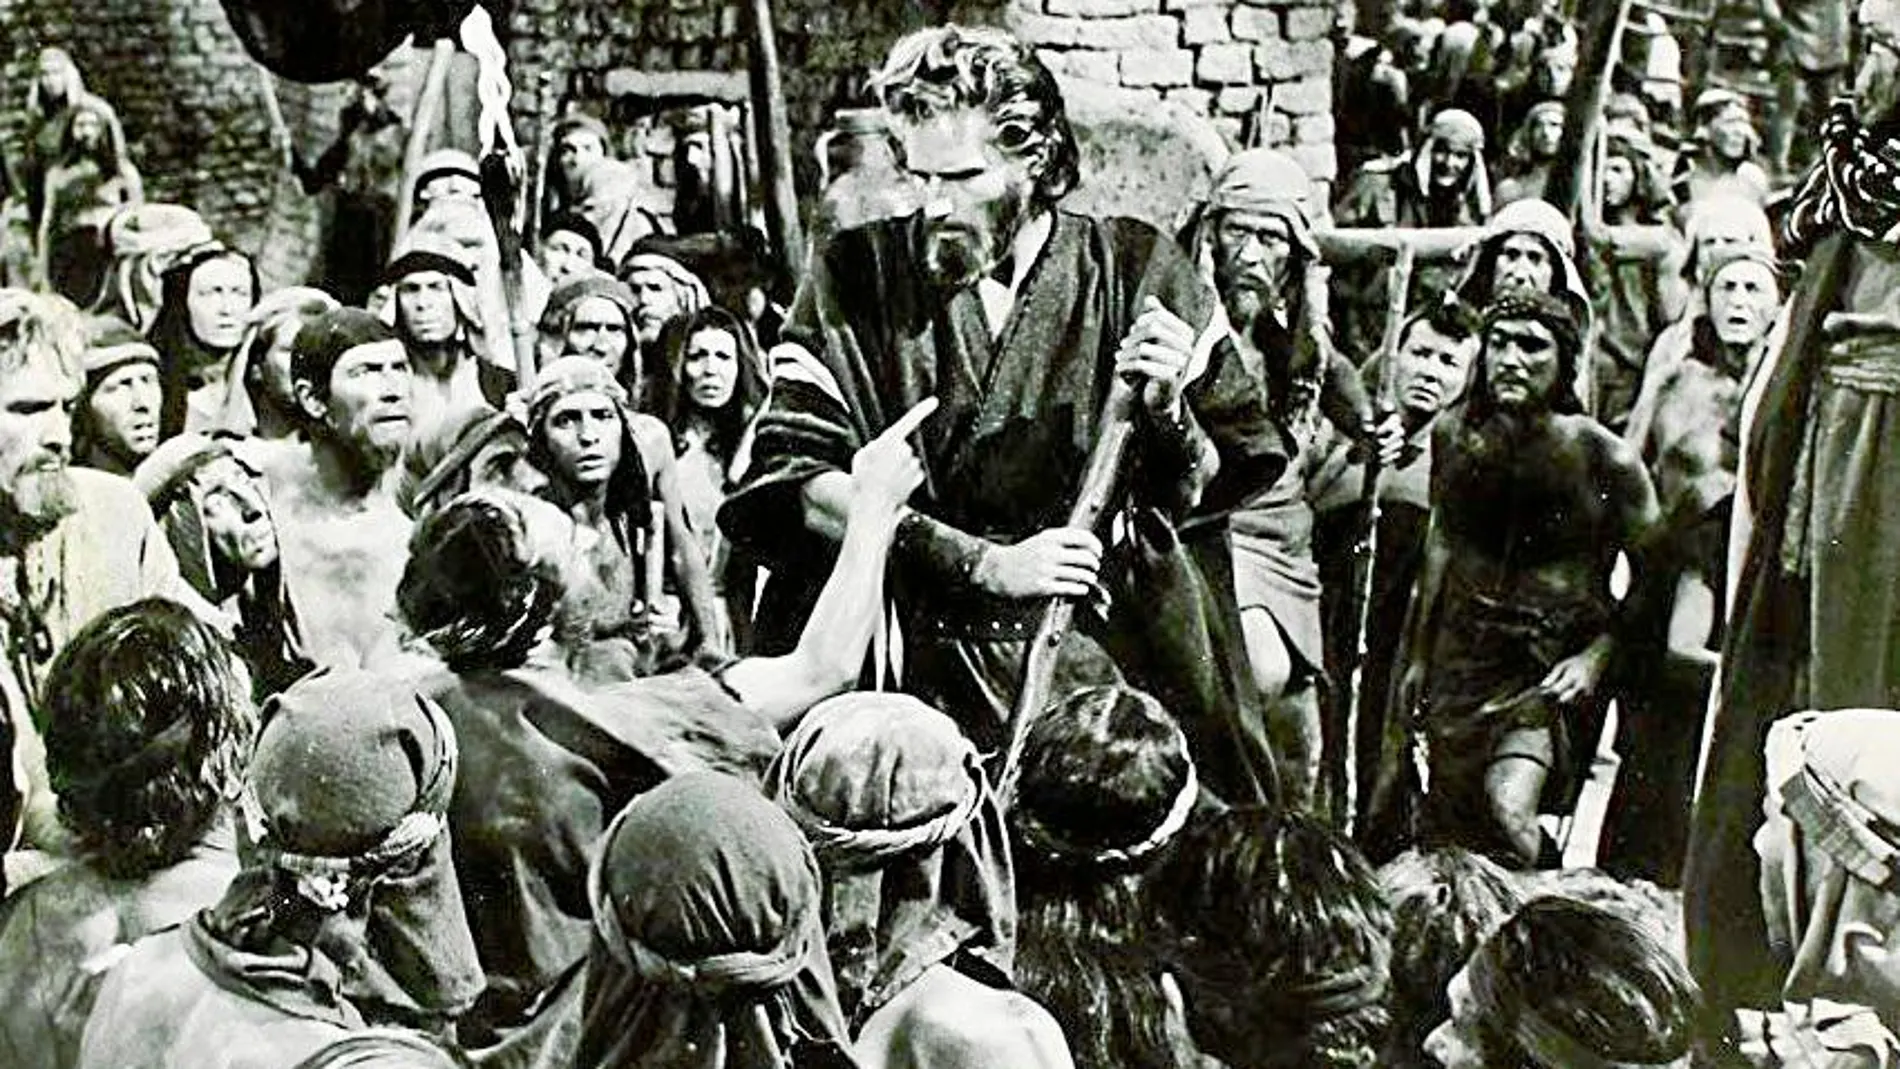 Grandes figuras del cine como Charlton Heston han interpretado para la gran pantalla historias biblicas